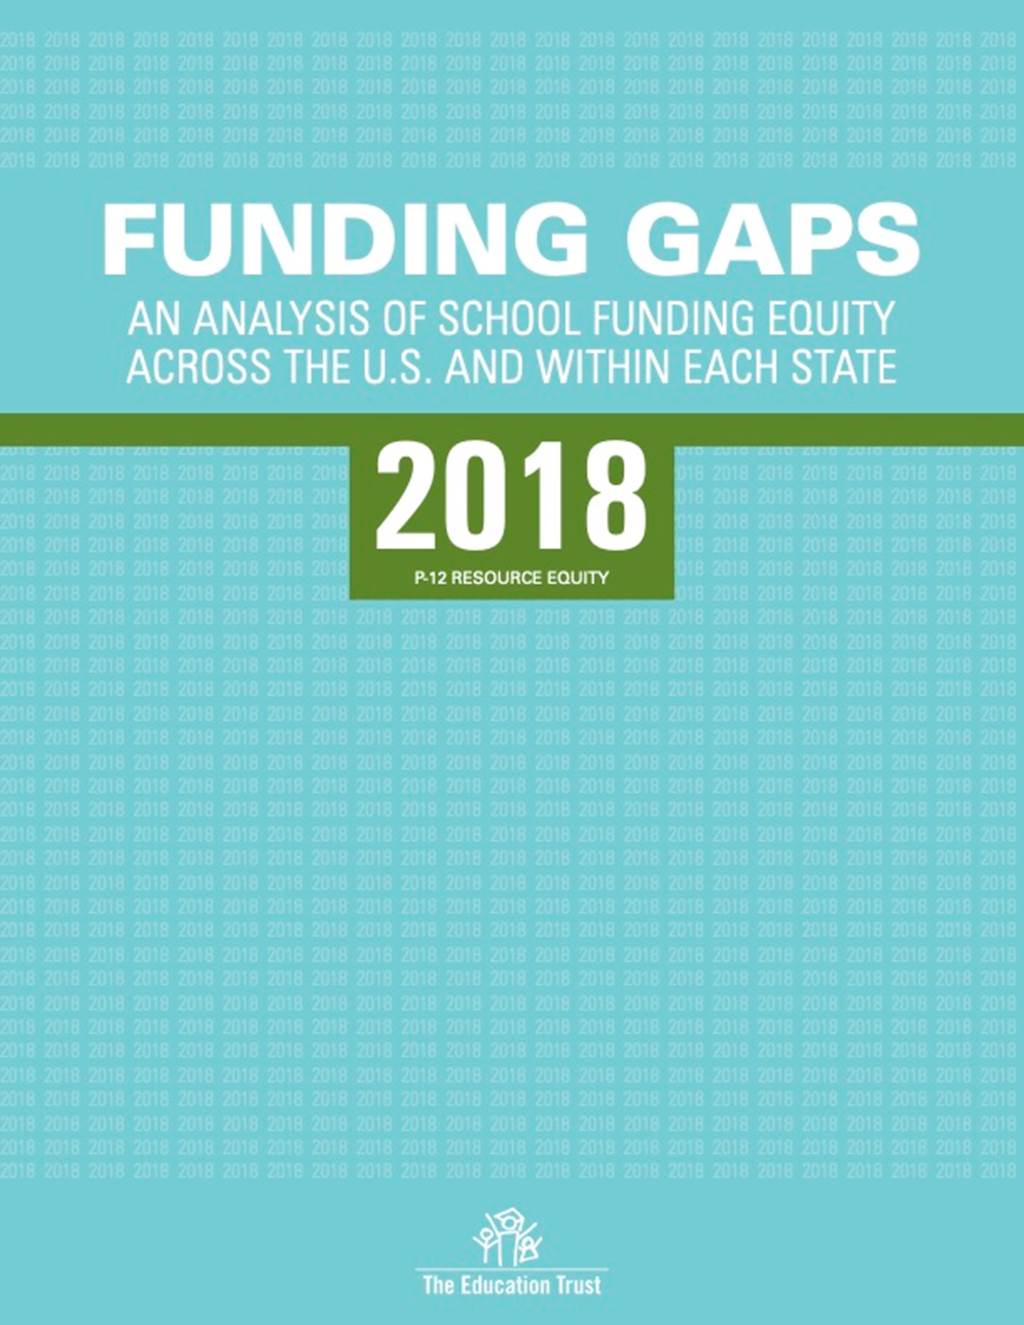 funding gaps document image